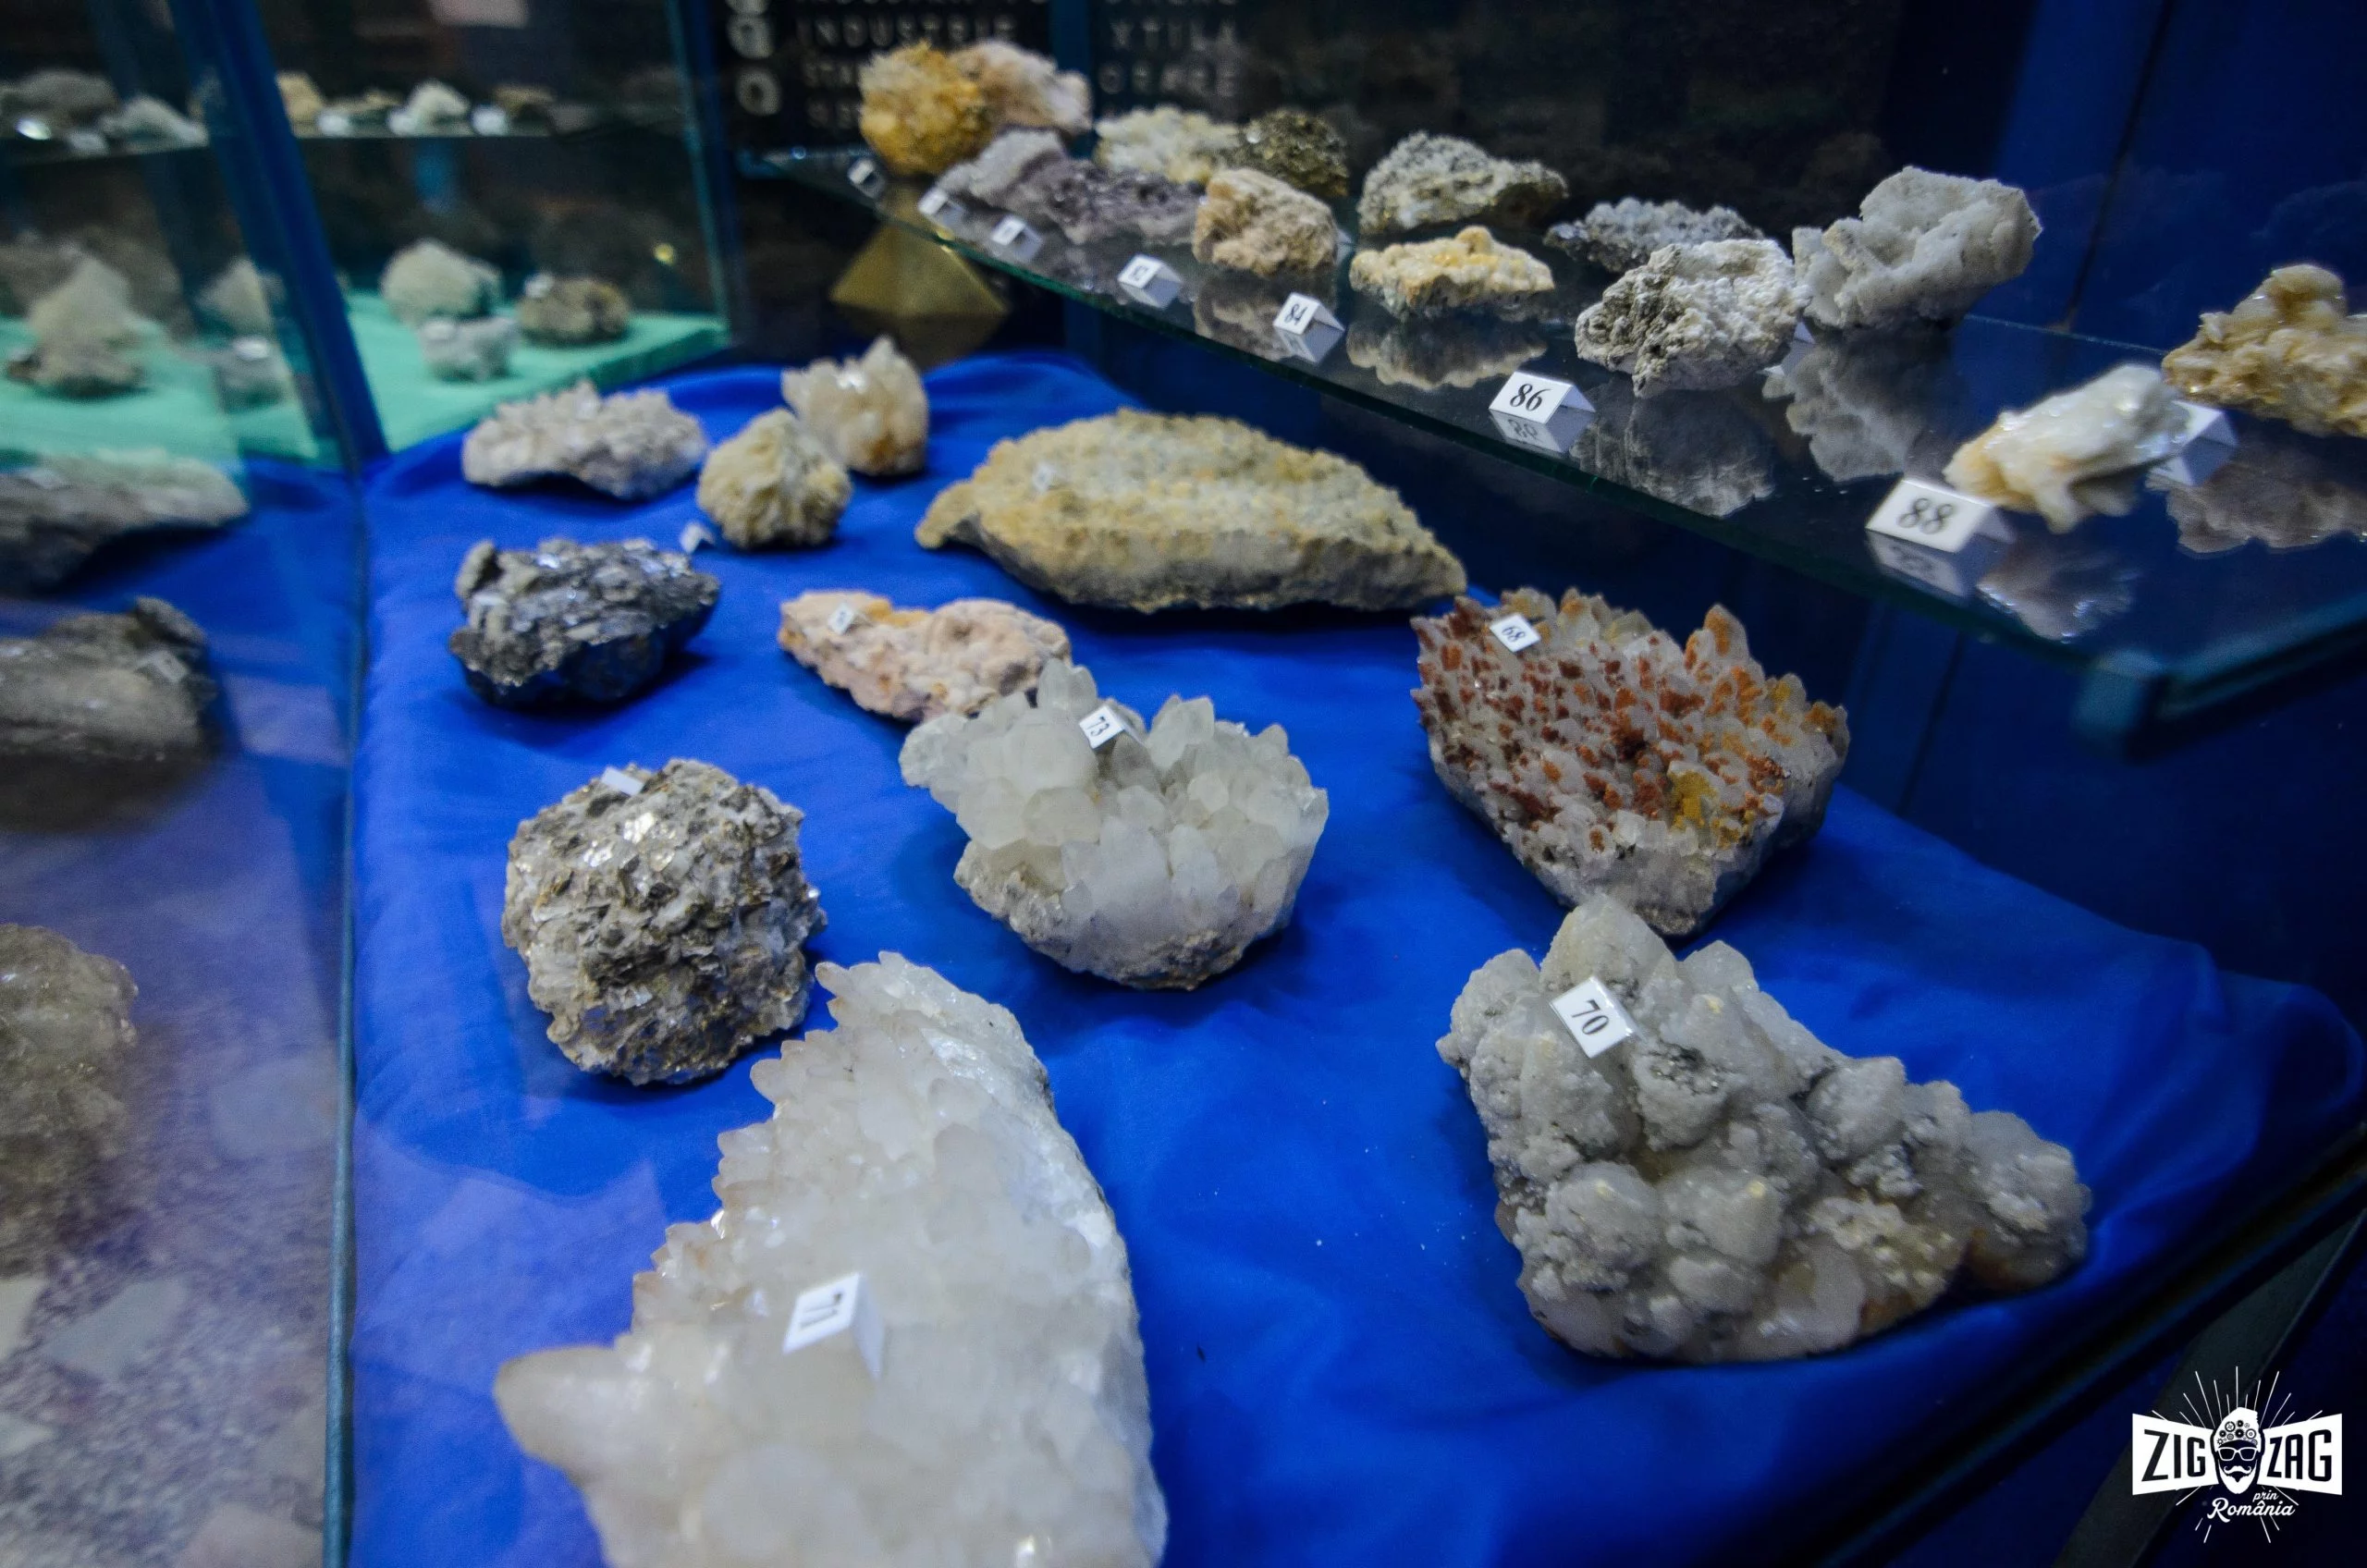 Muzeul Mineritului judetul Hunedoara 1